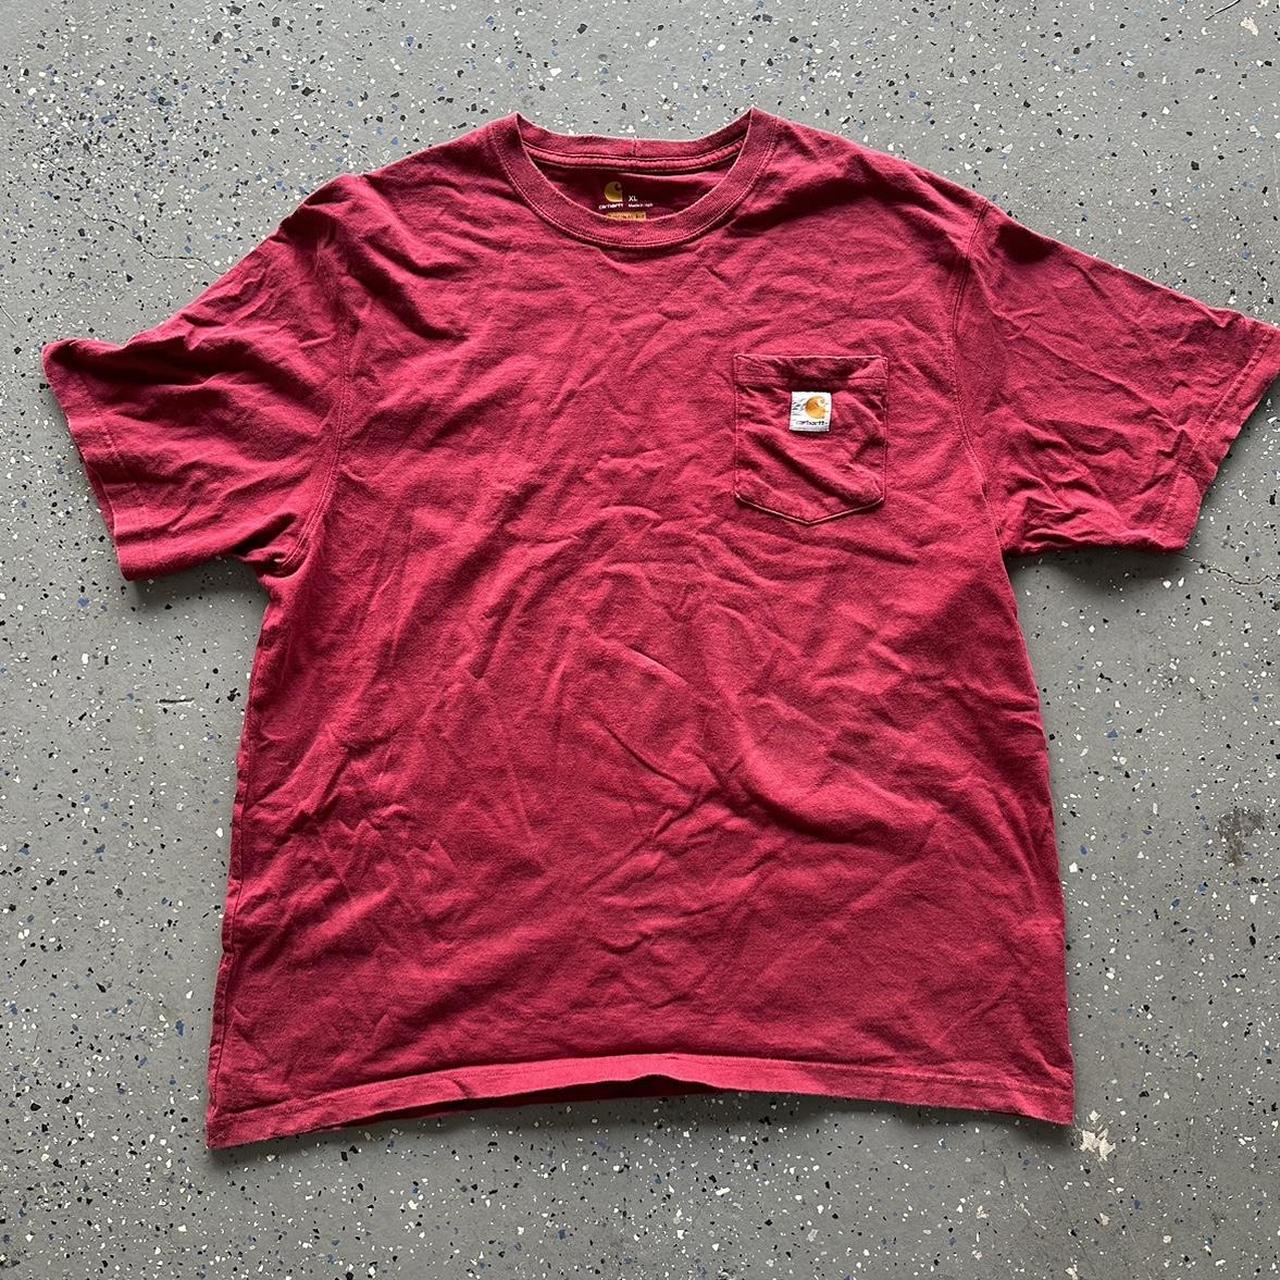 Burgundy Carhartt Shirt - Size XL - Depop